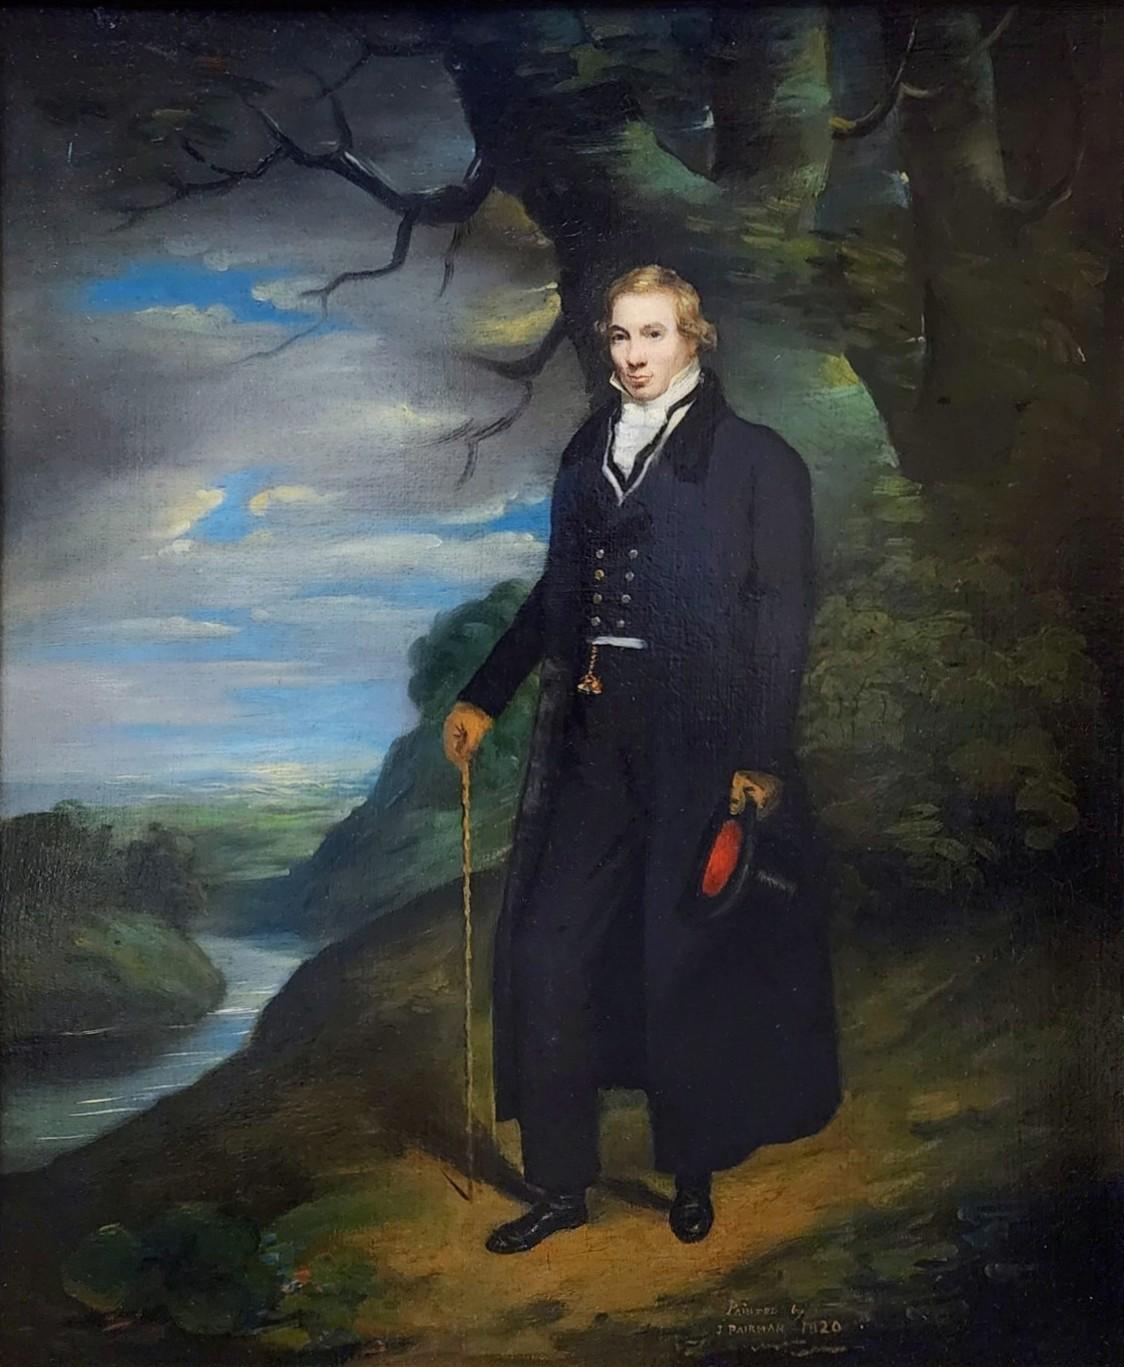 Porträt eines Gentleman in einer Landschaft, schottische Porträts, Porträt, Wealthy  – Painting von John Pairman